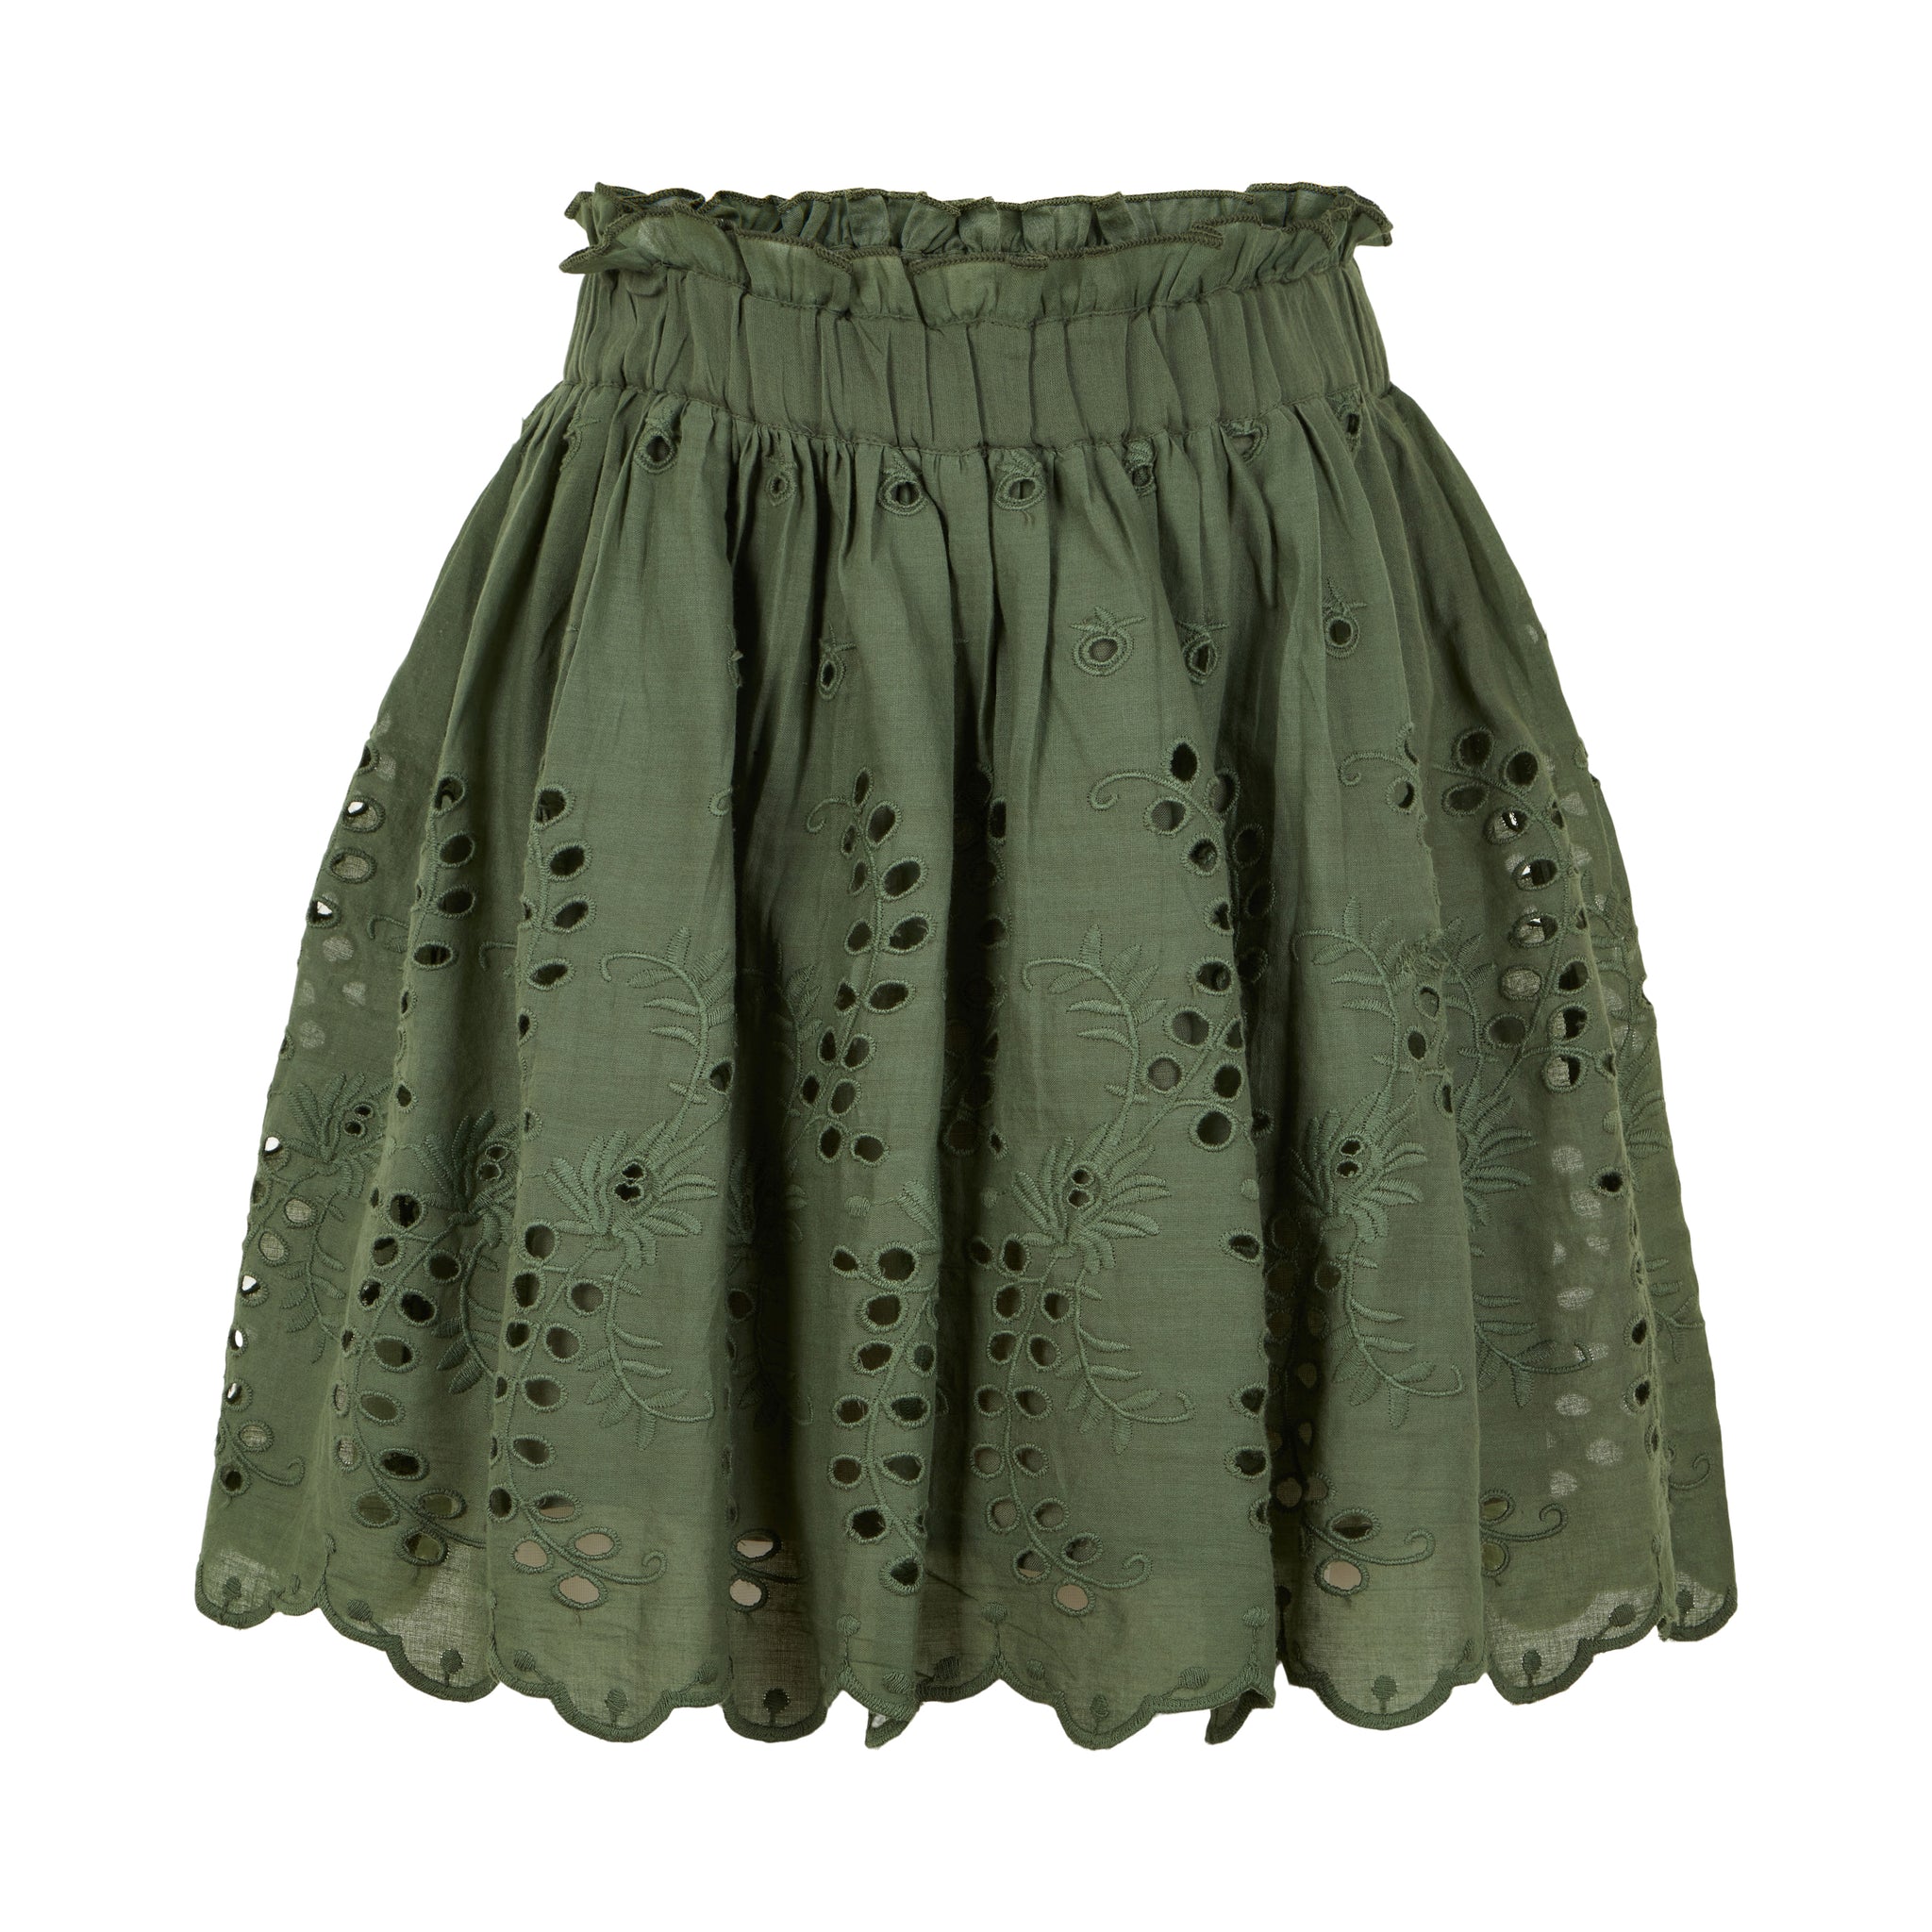 Creamie - Skirt Embroidery (821878) - Four Leaf Clover